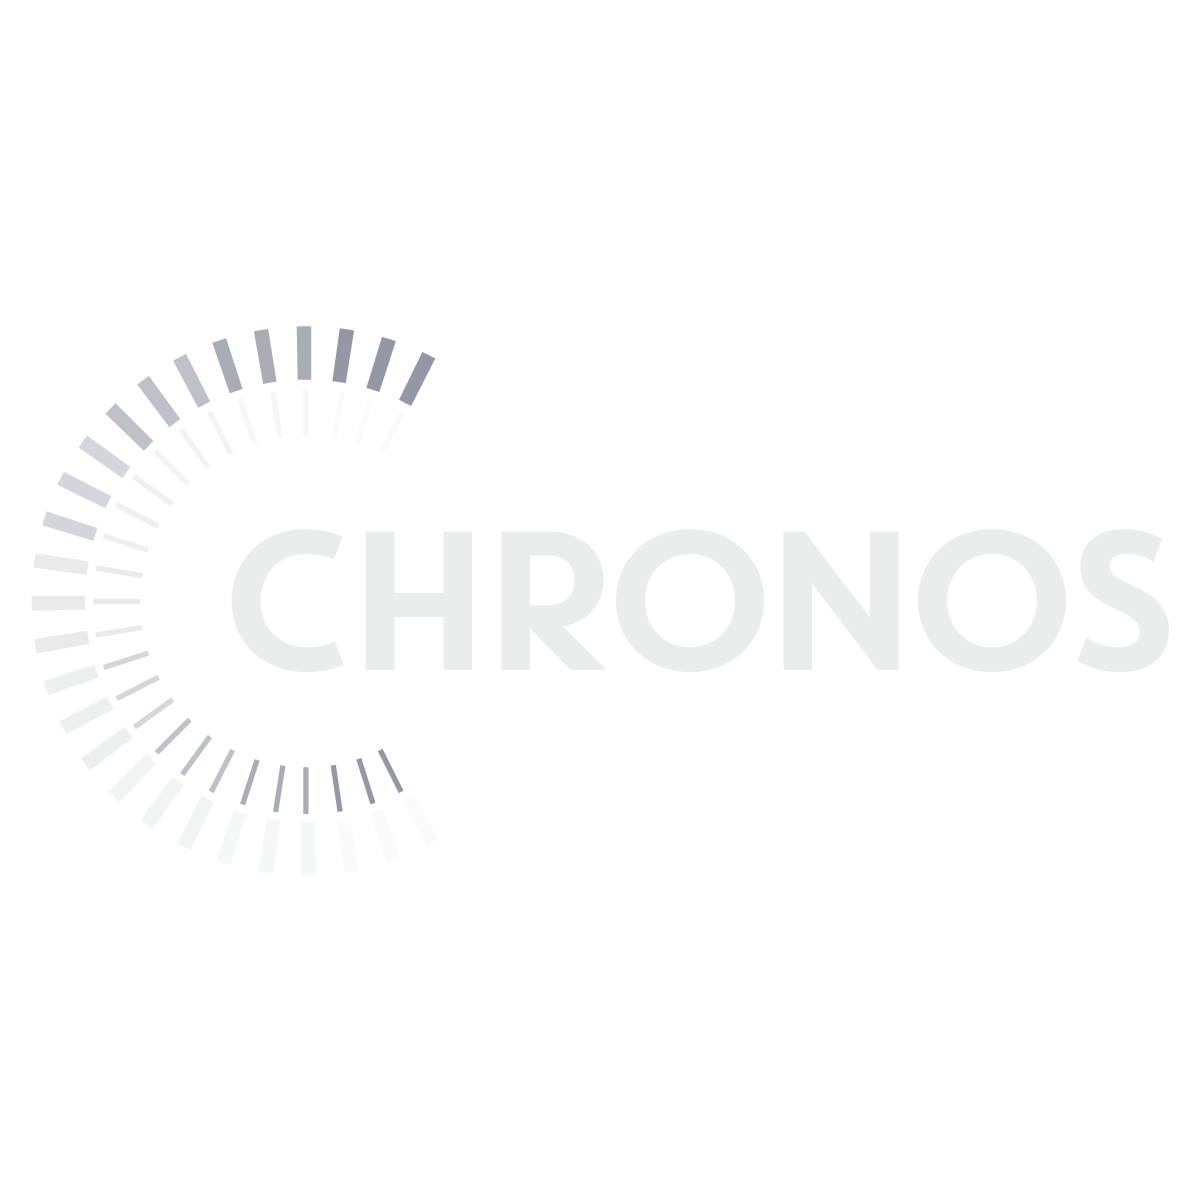 Chronos Logo